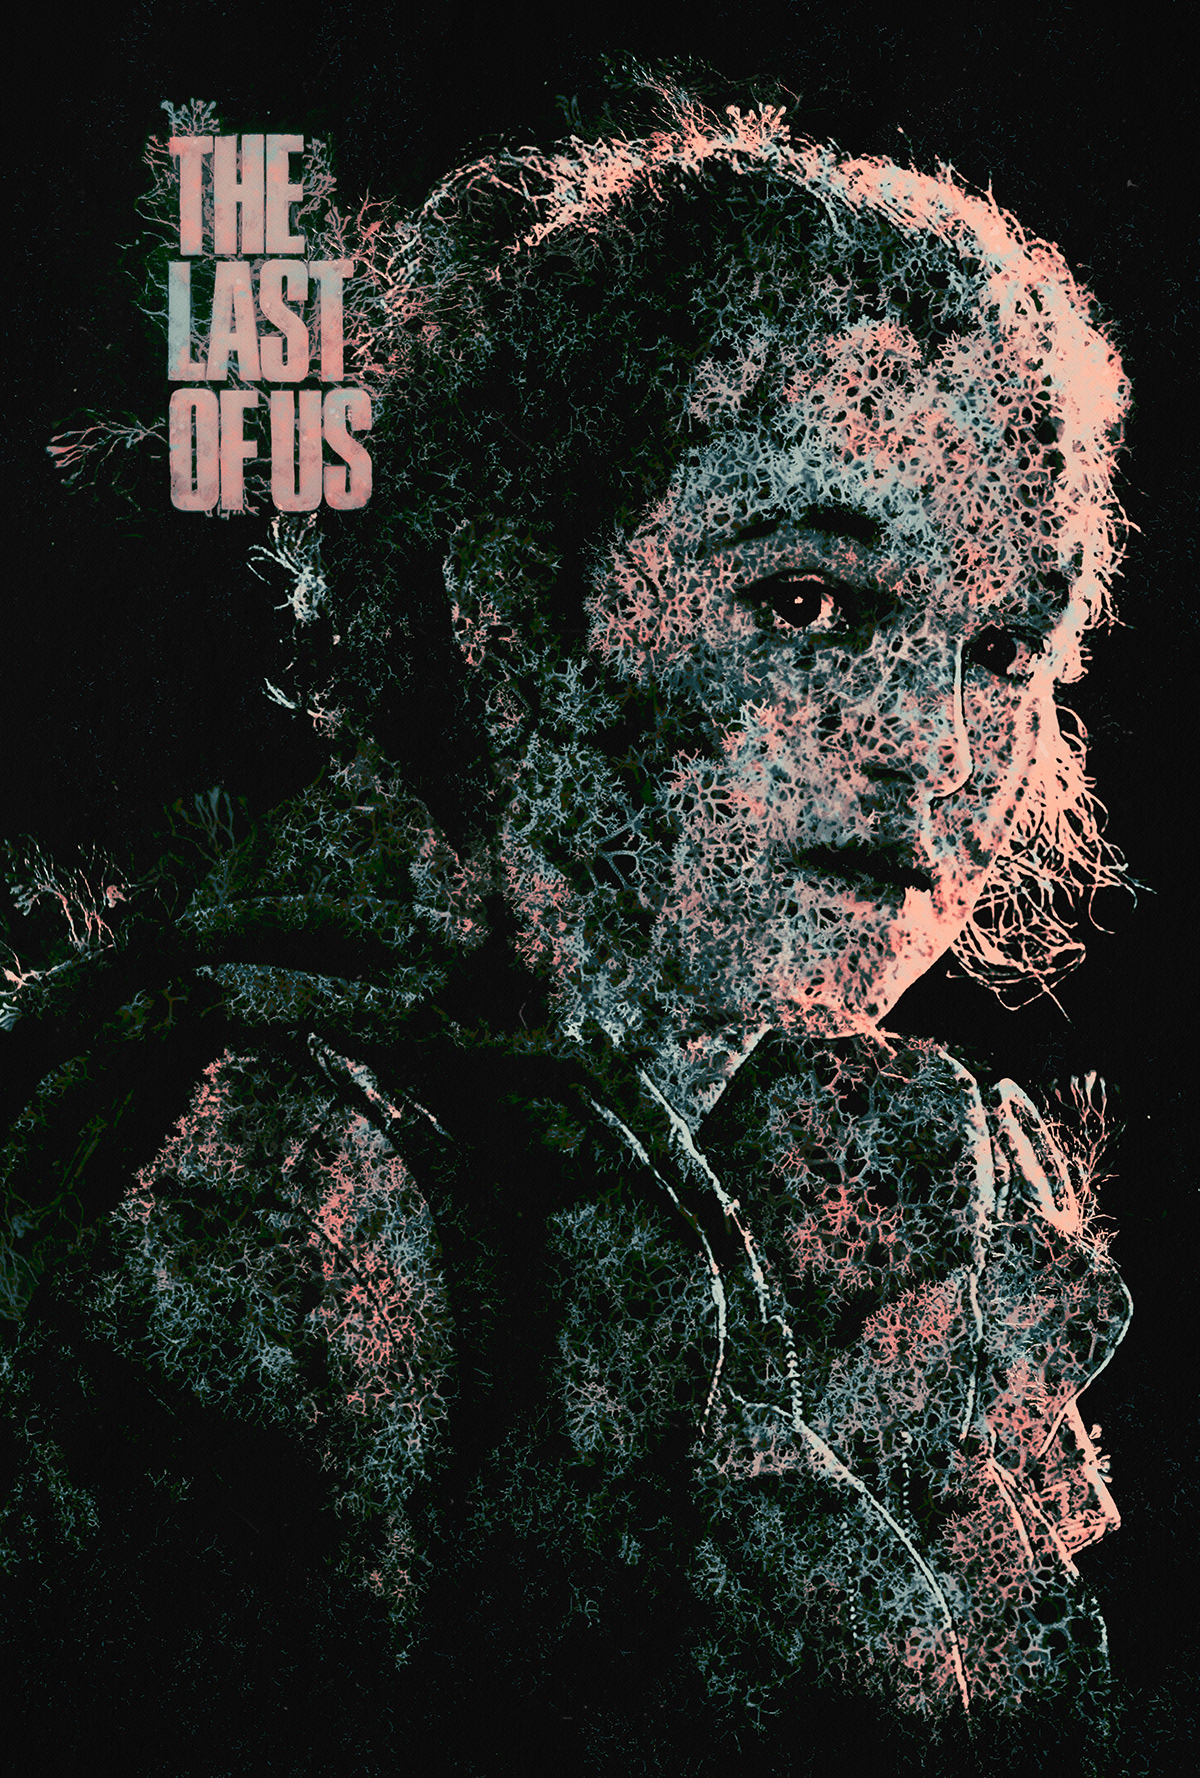 Cinema digitalart film poster key art movie movie poster pedro pascal poster art Poster Design The Last of Us